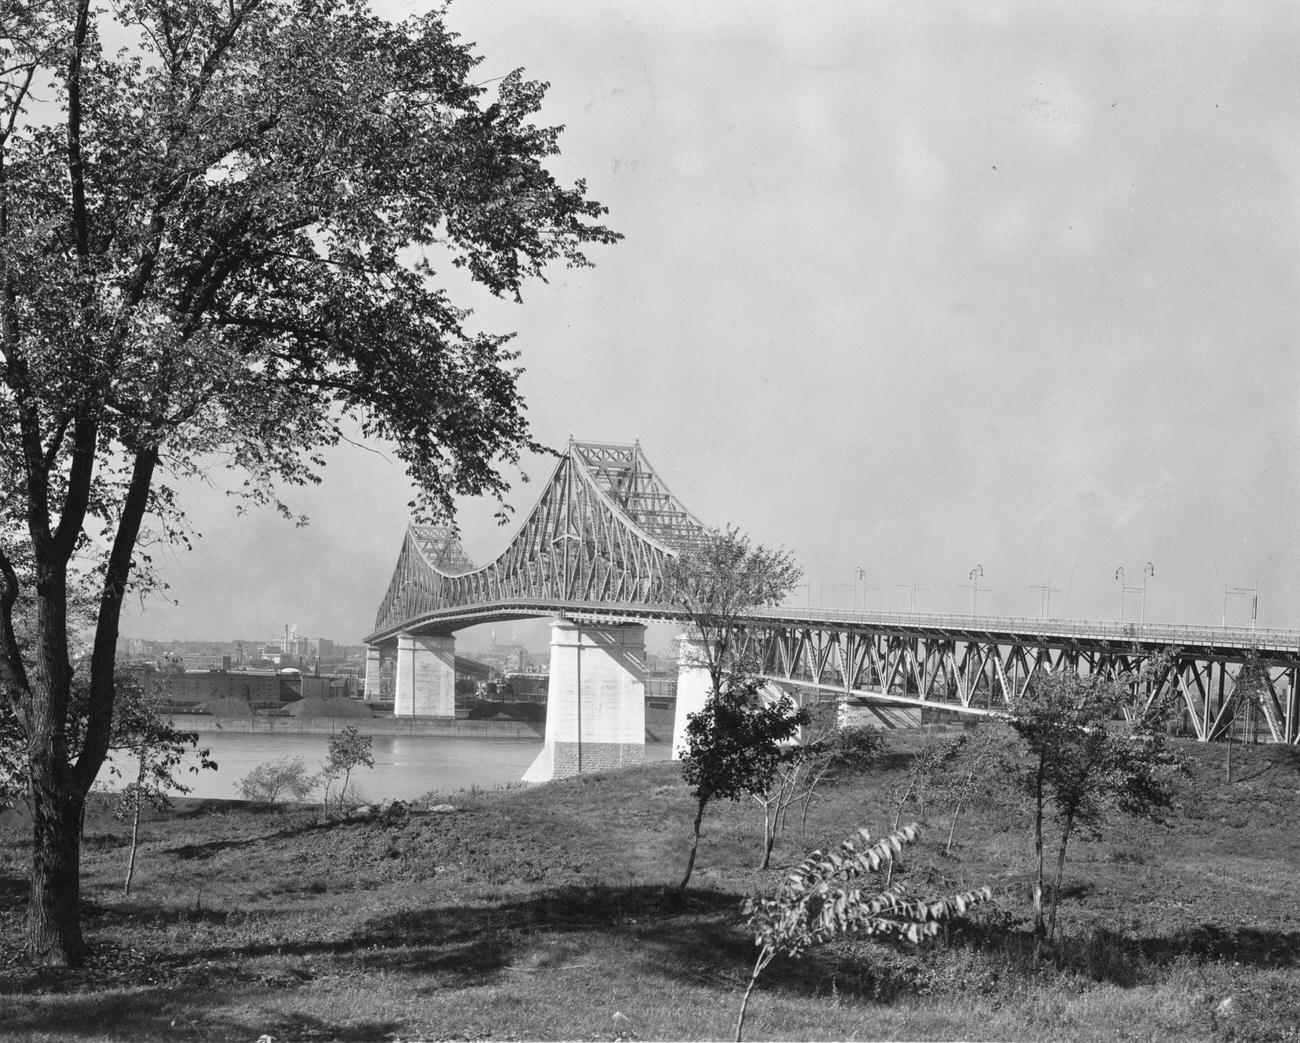 Jacques Cartier Bridge, Montreal, 1951